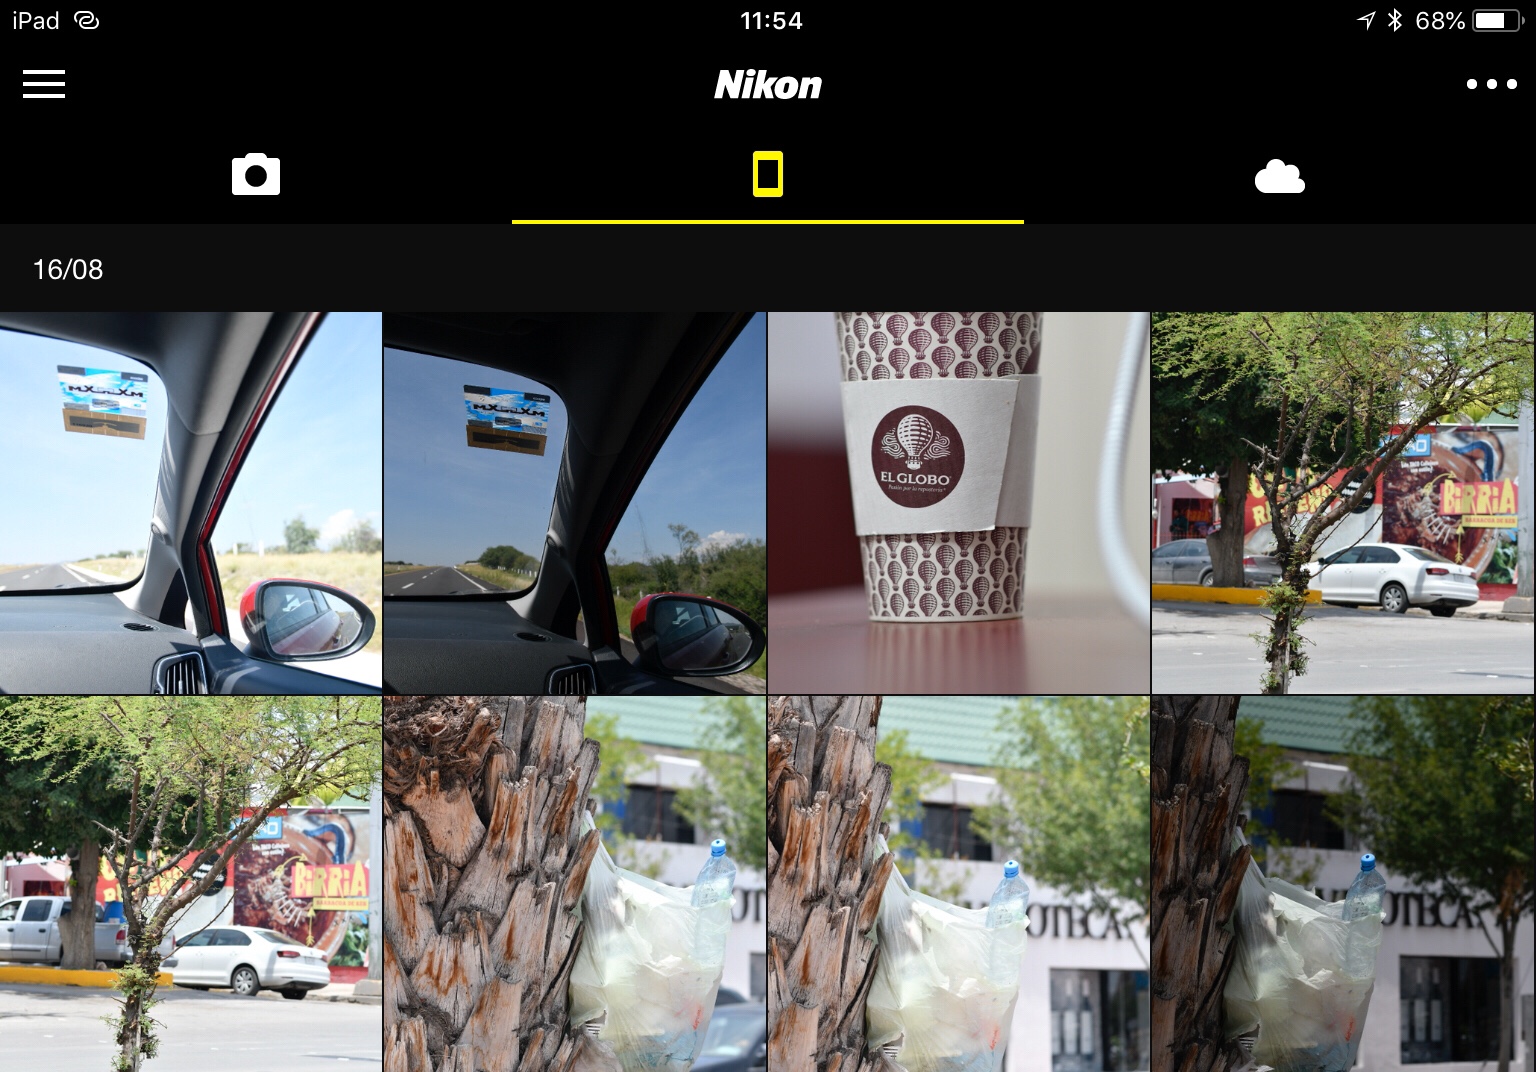 Conexión Nikon D500 con iPad para envío automático de fotografías